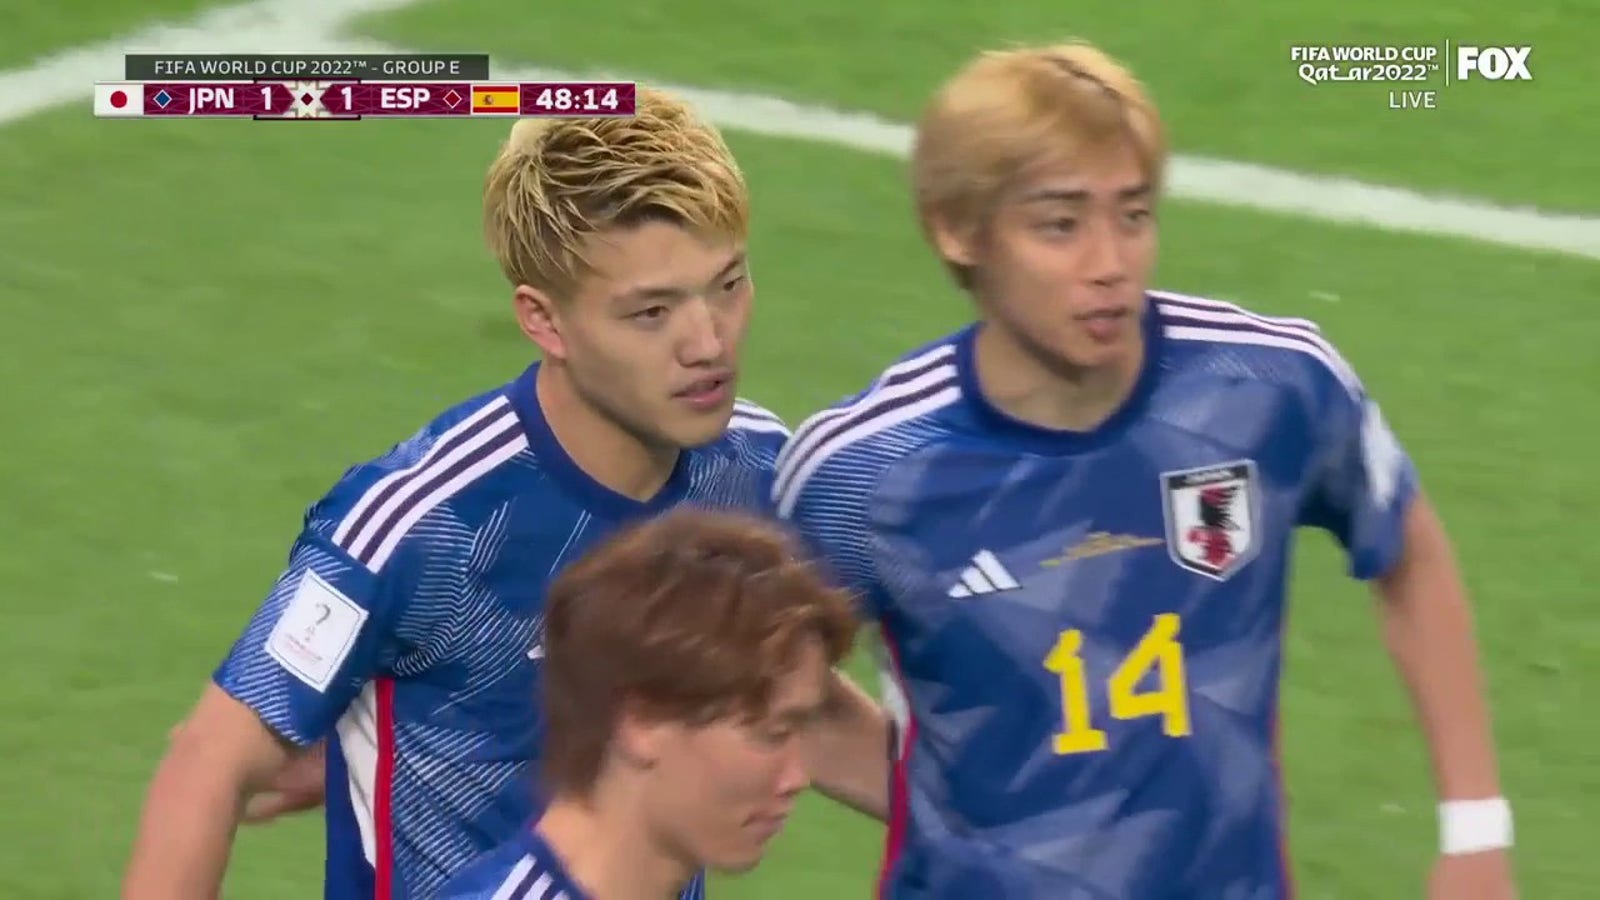 Japón marca el gol de Ritsu Doan contra España en el 48'